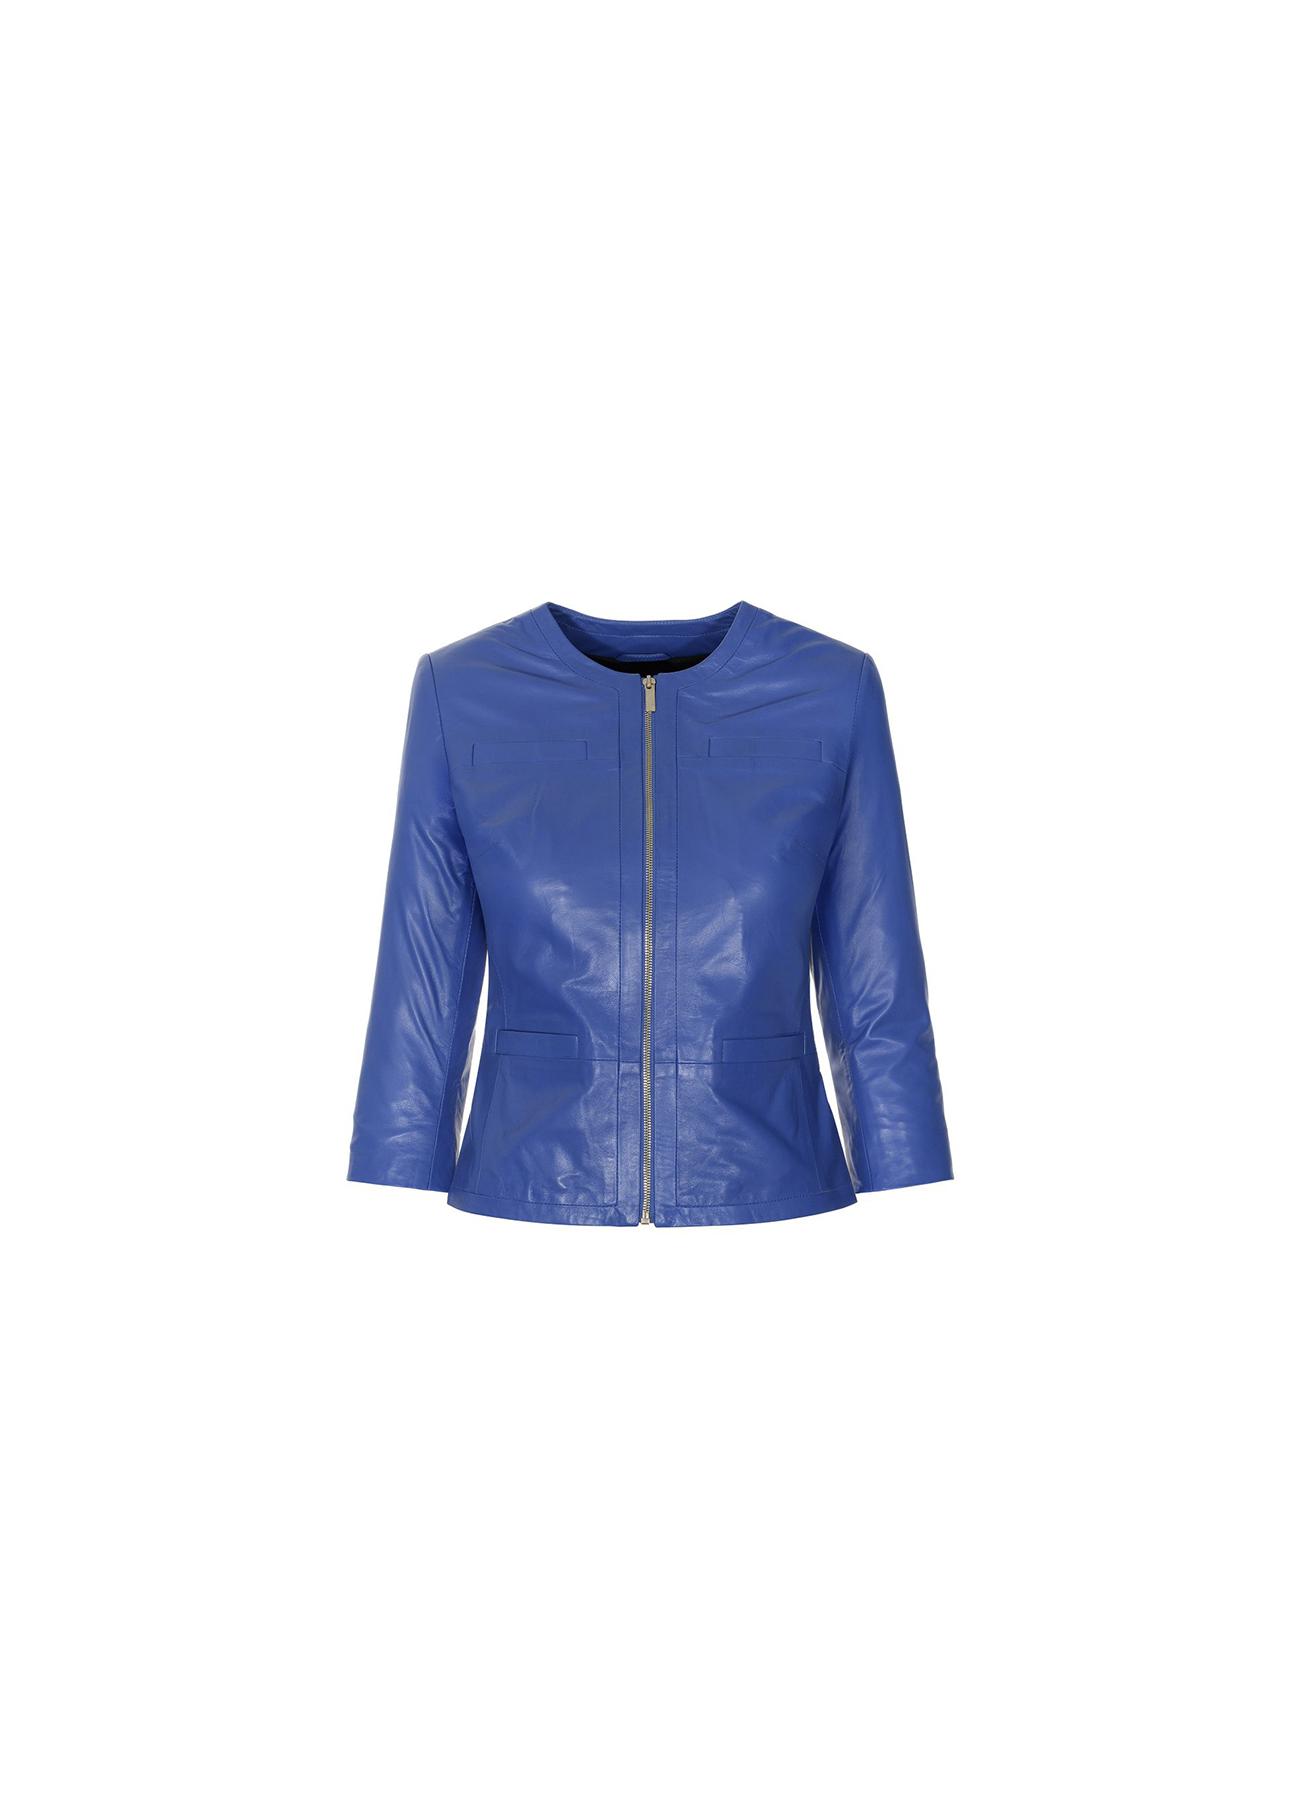 Taliowana niebieska kurtka skórzana damska KURDS-0082-5448(W19)